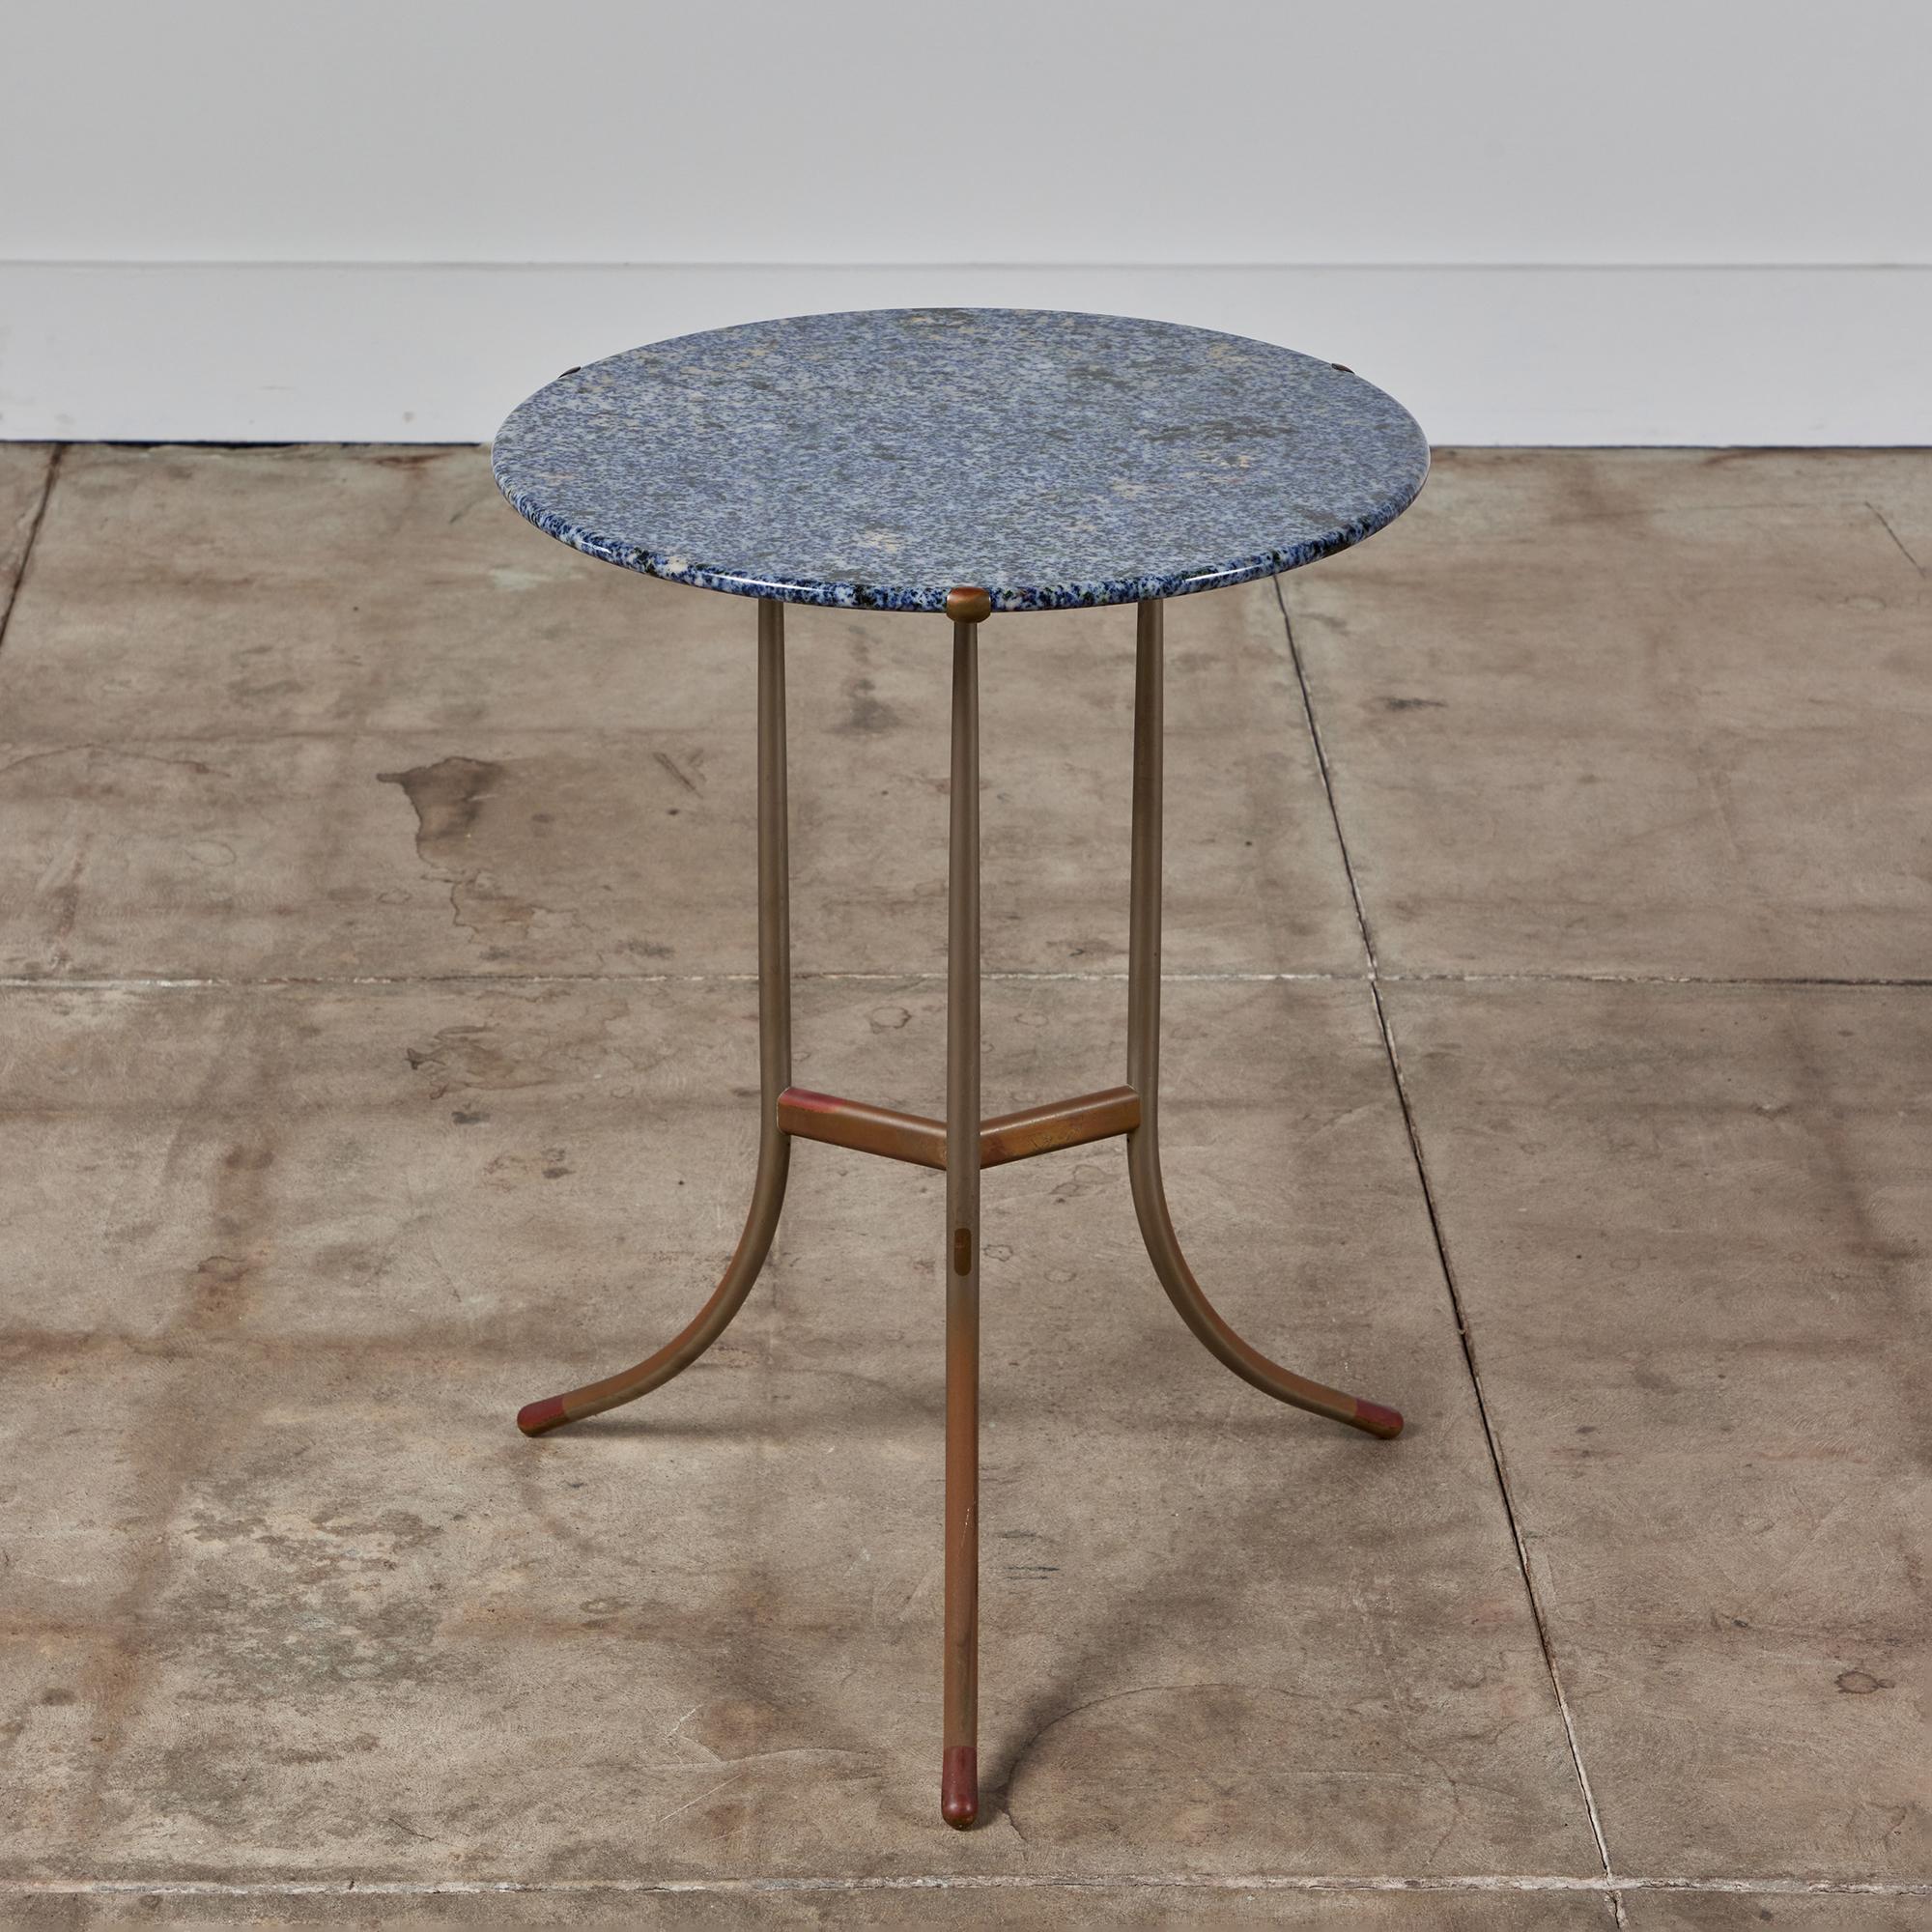 Cedric Hartman Beistelltisch aus Metall und Granit, um 1970, USA. Die runde, auffallend blaue Granittischplatte weist eine cremefarbene und schwarze Maserung auf. Die Tischplatte ruht in drei zarten Kupferzacken. Der Tisch hat einen Sockel mit drei